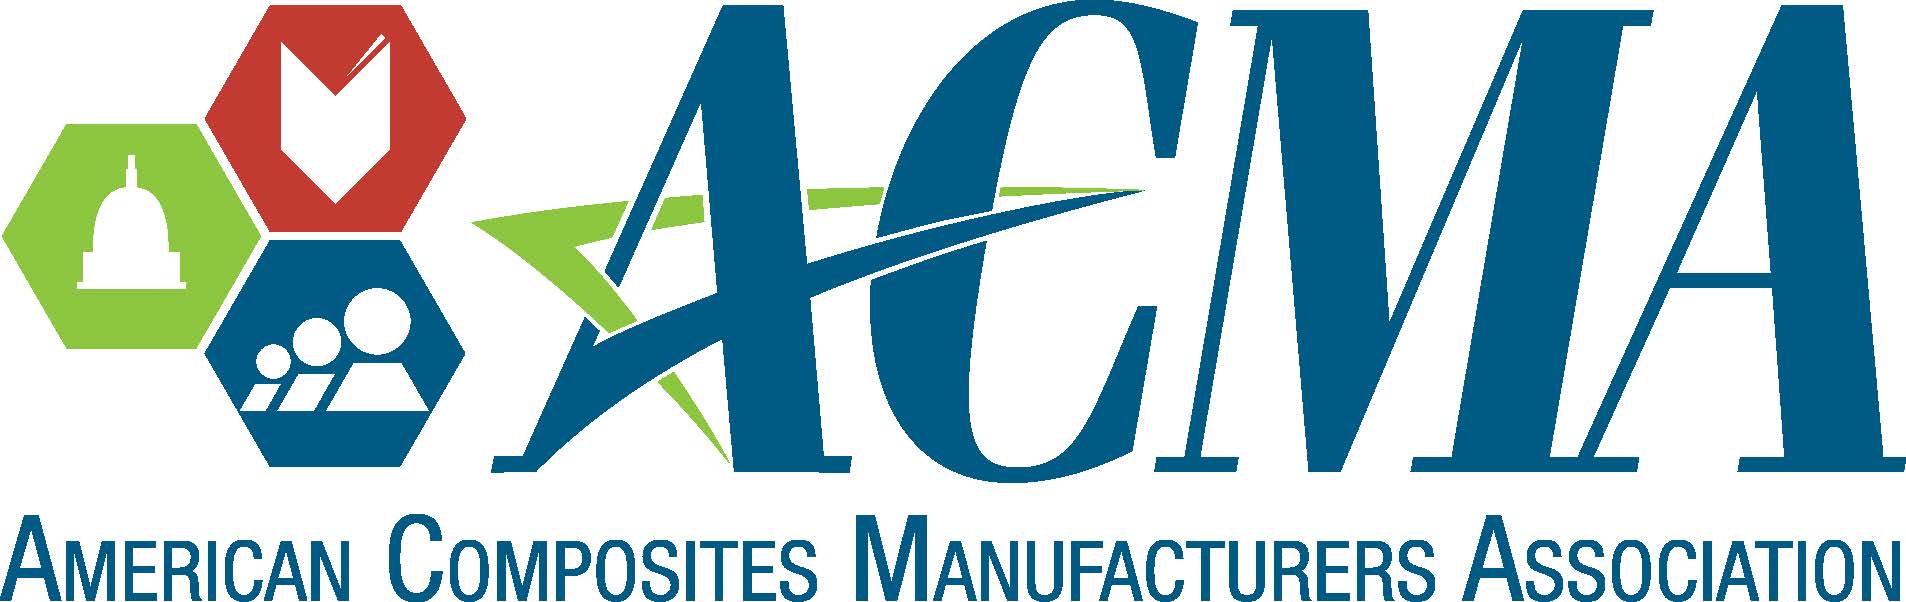 ACMA logo.jpeg